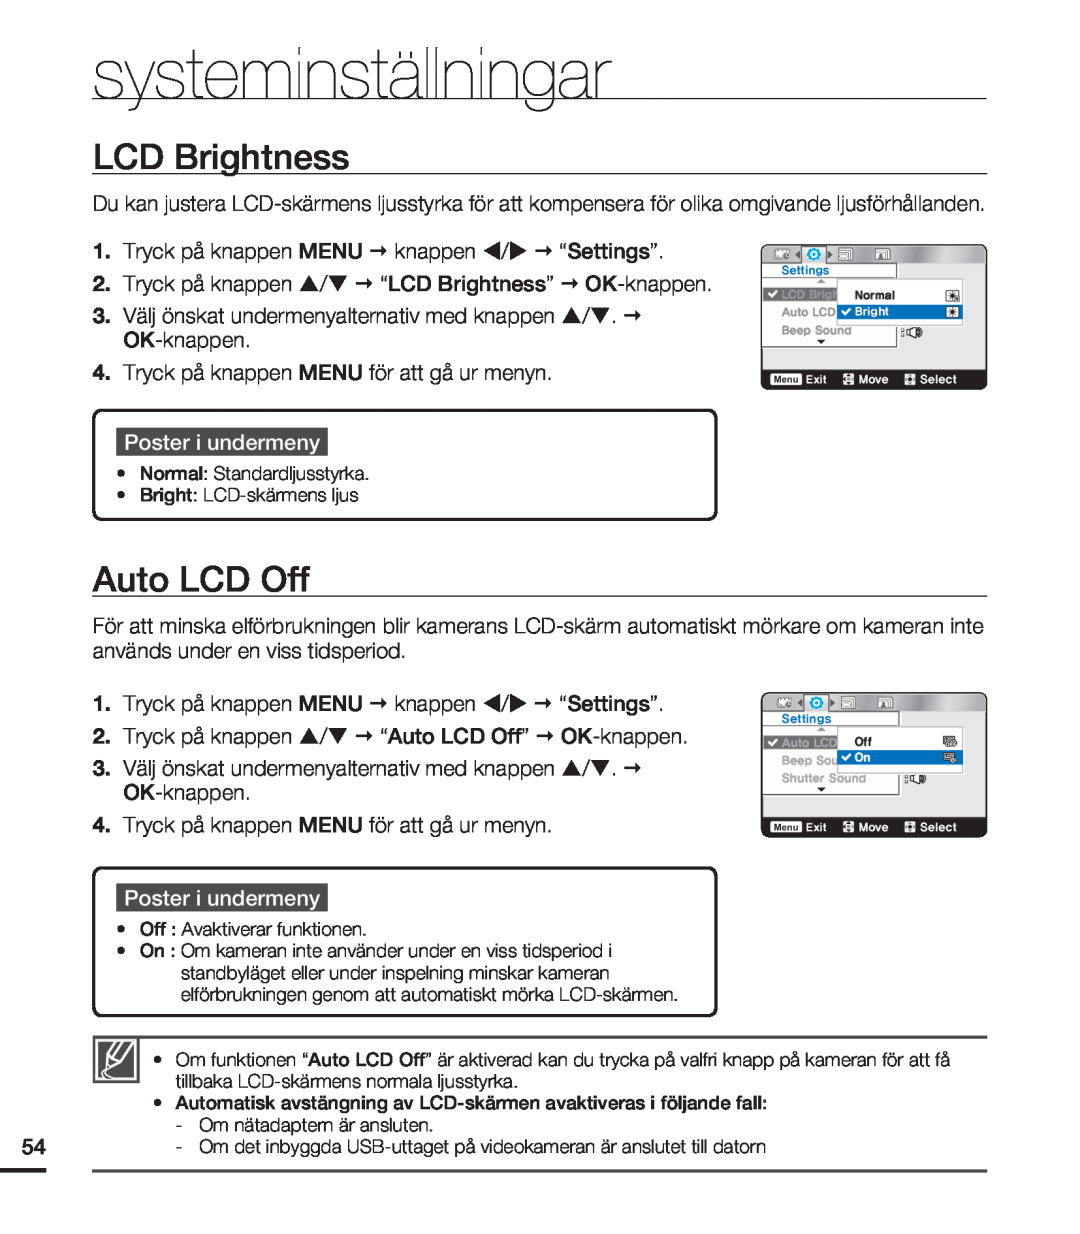 Samsung HMX-U20BP/EDC manual LCD Brightness, Auto LCD Off, systeminställningar, Poster i undermeny 